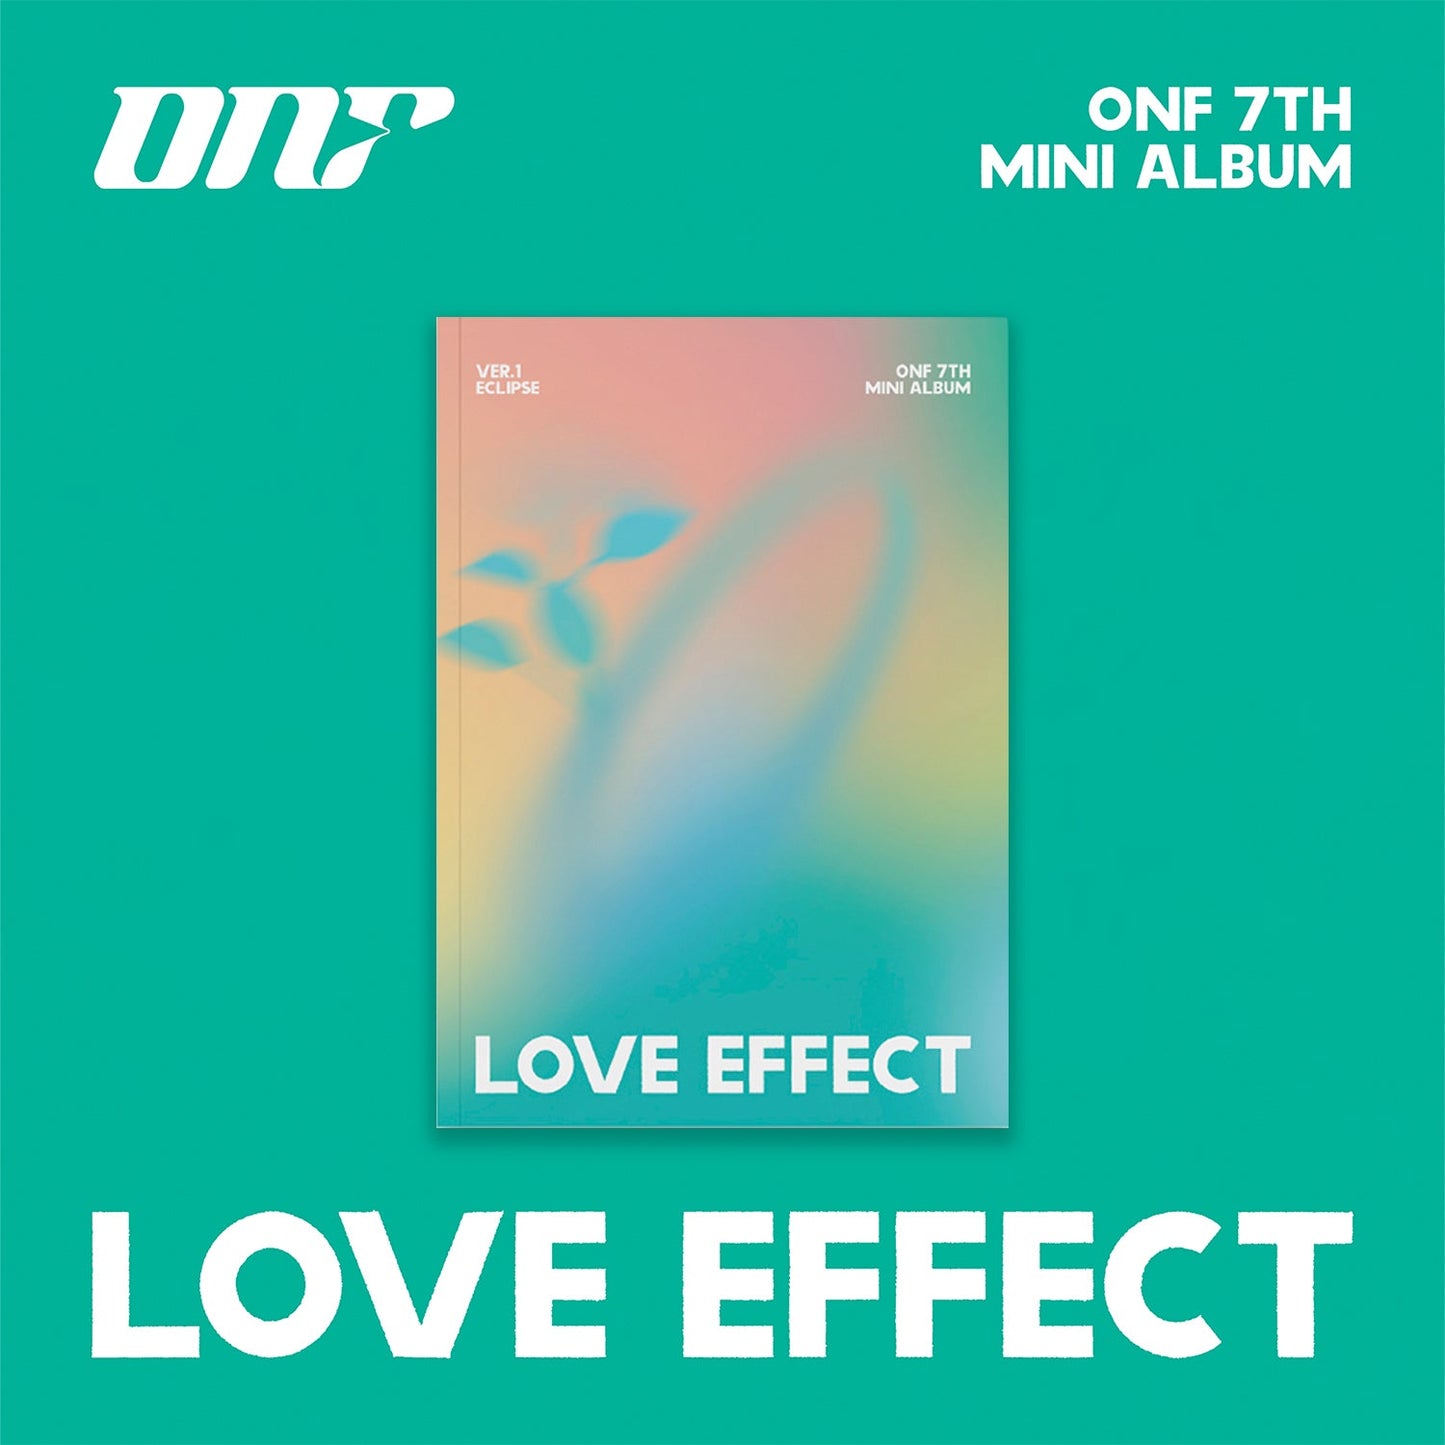 ONF 7TH MINI ALBUM 'LOVE EFFECT' ECLIPSE VERSION COVER